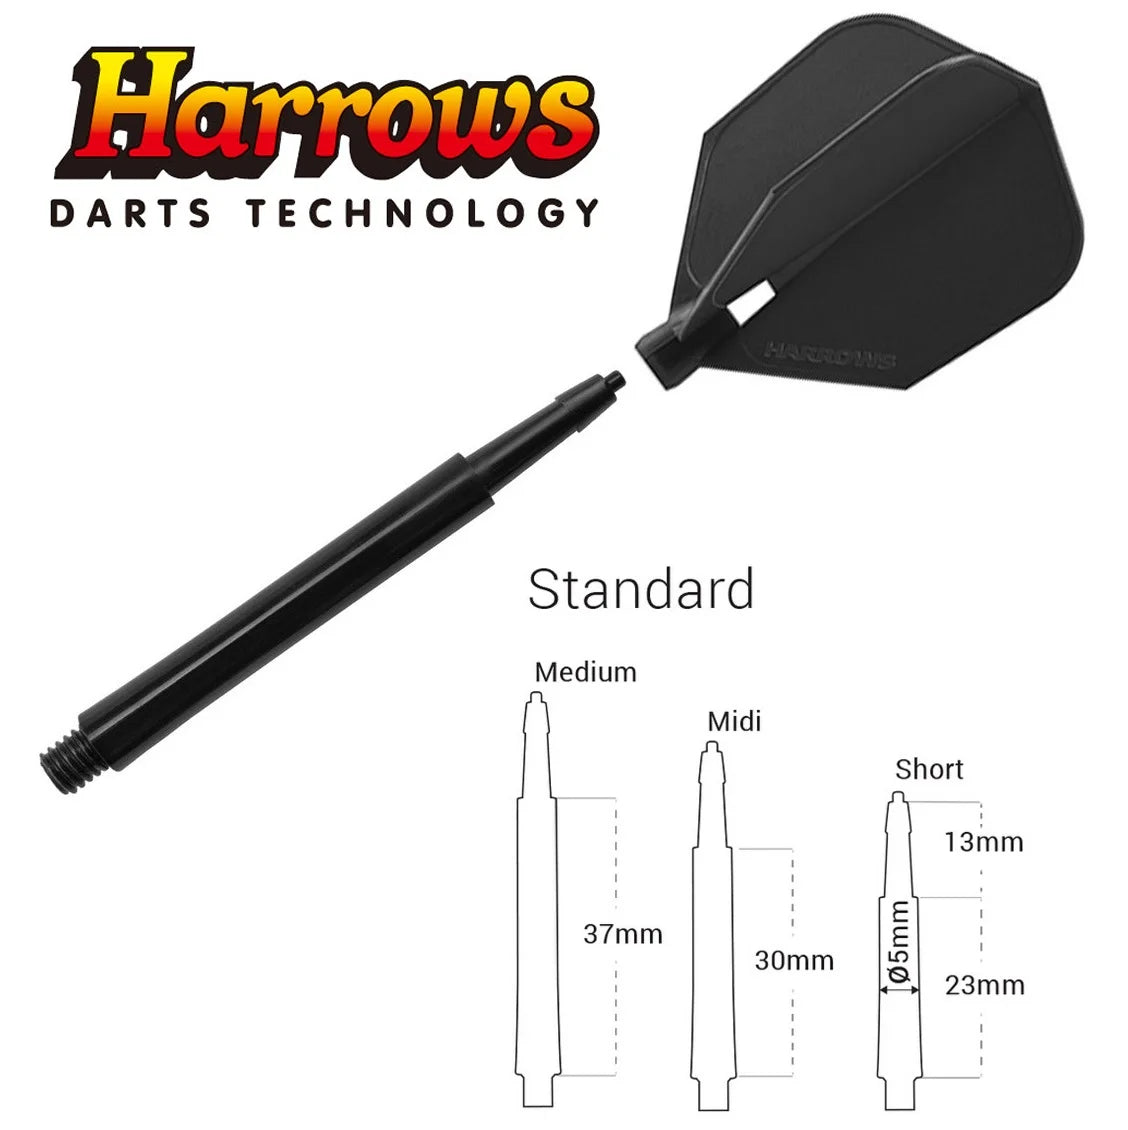 Harrows Clic Dart Shaft